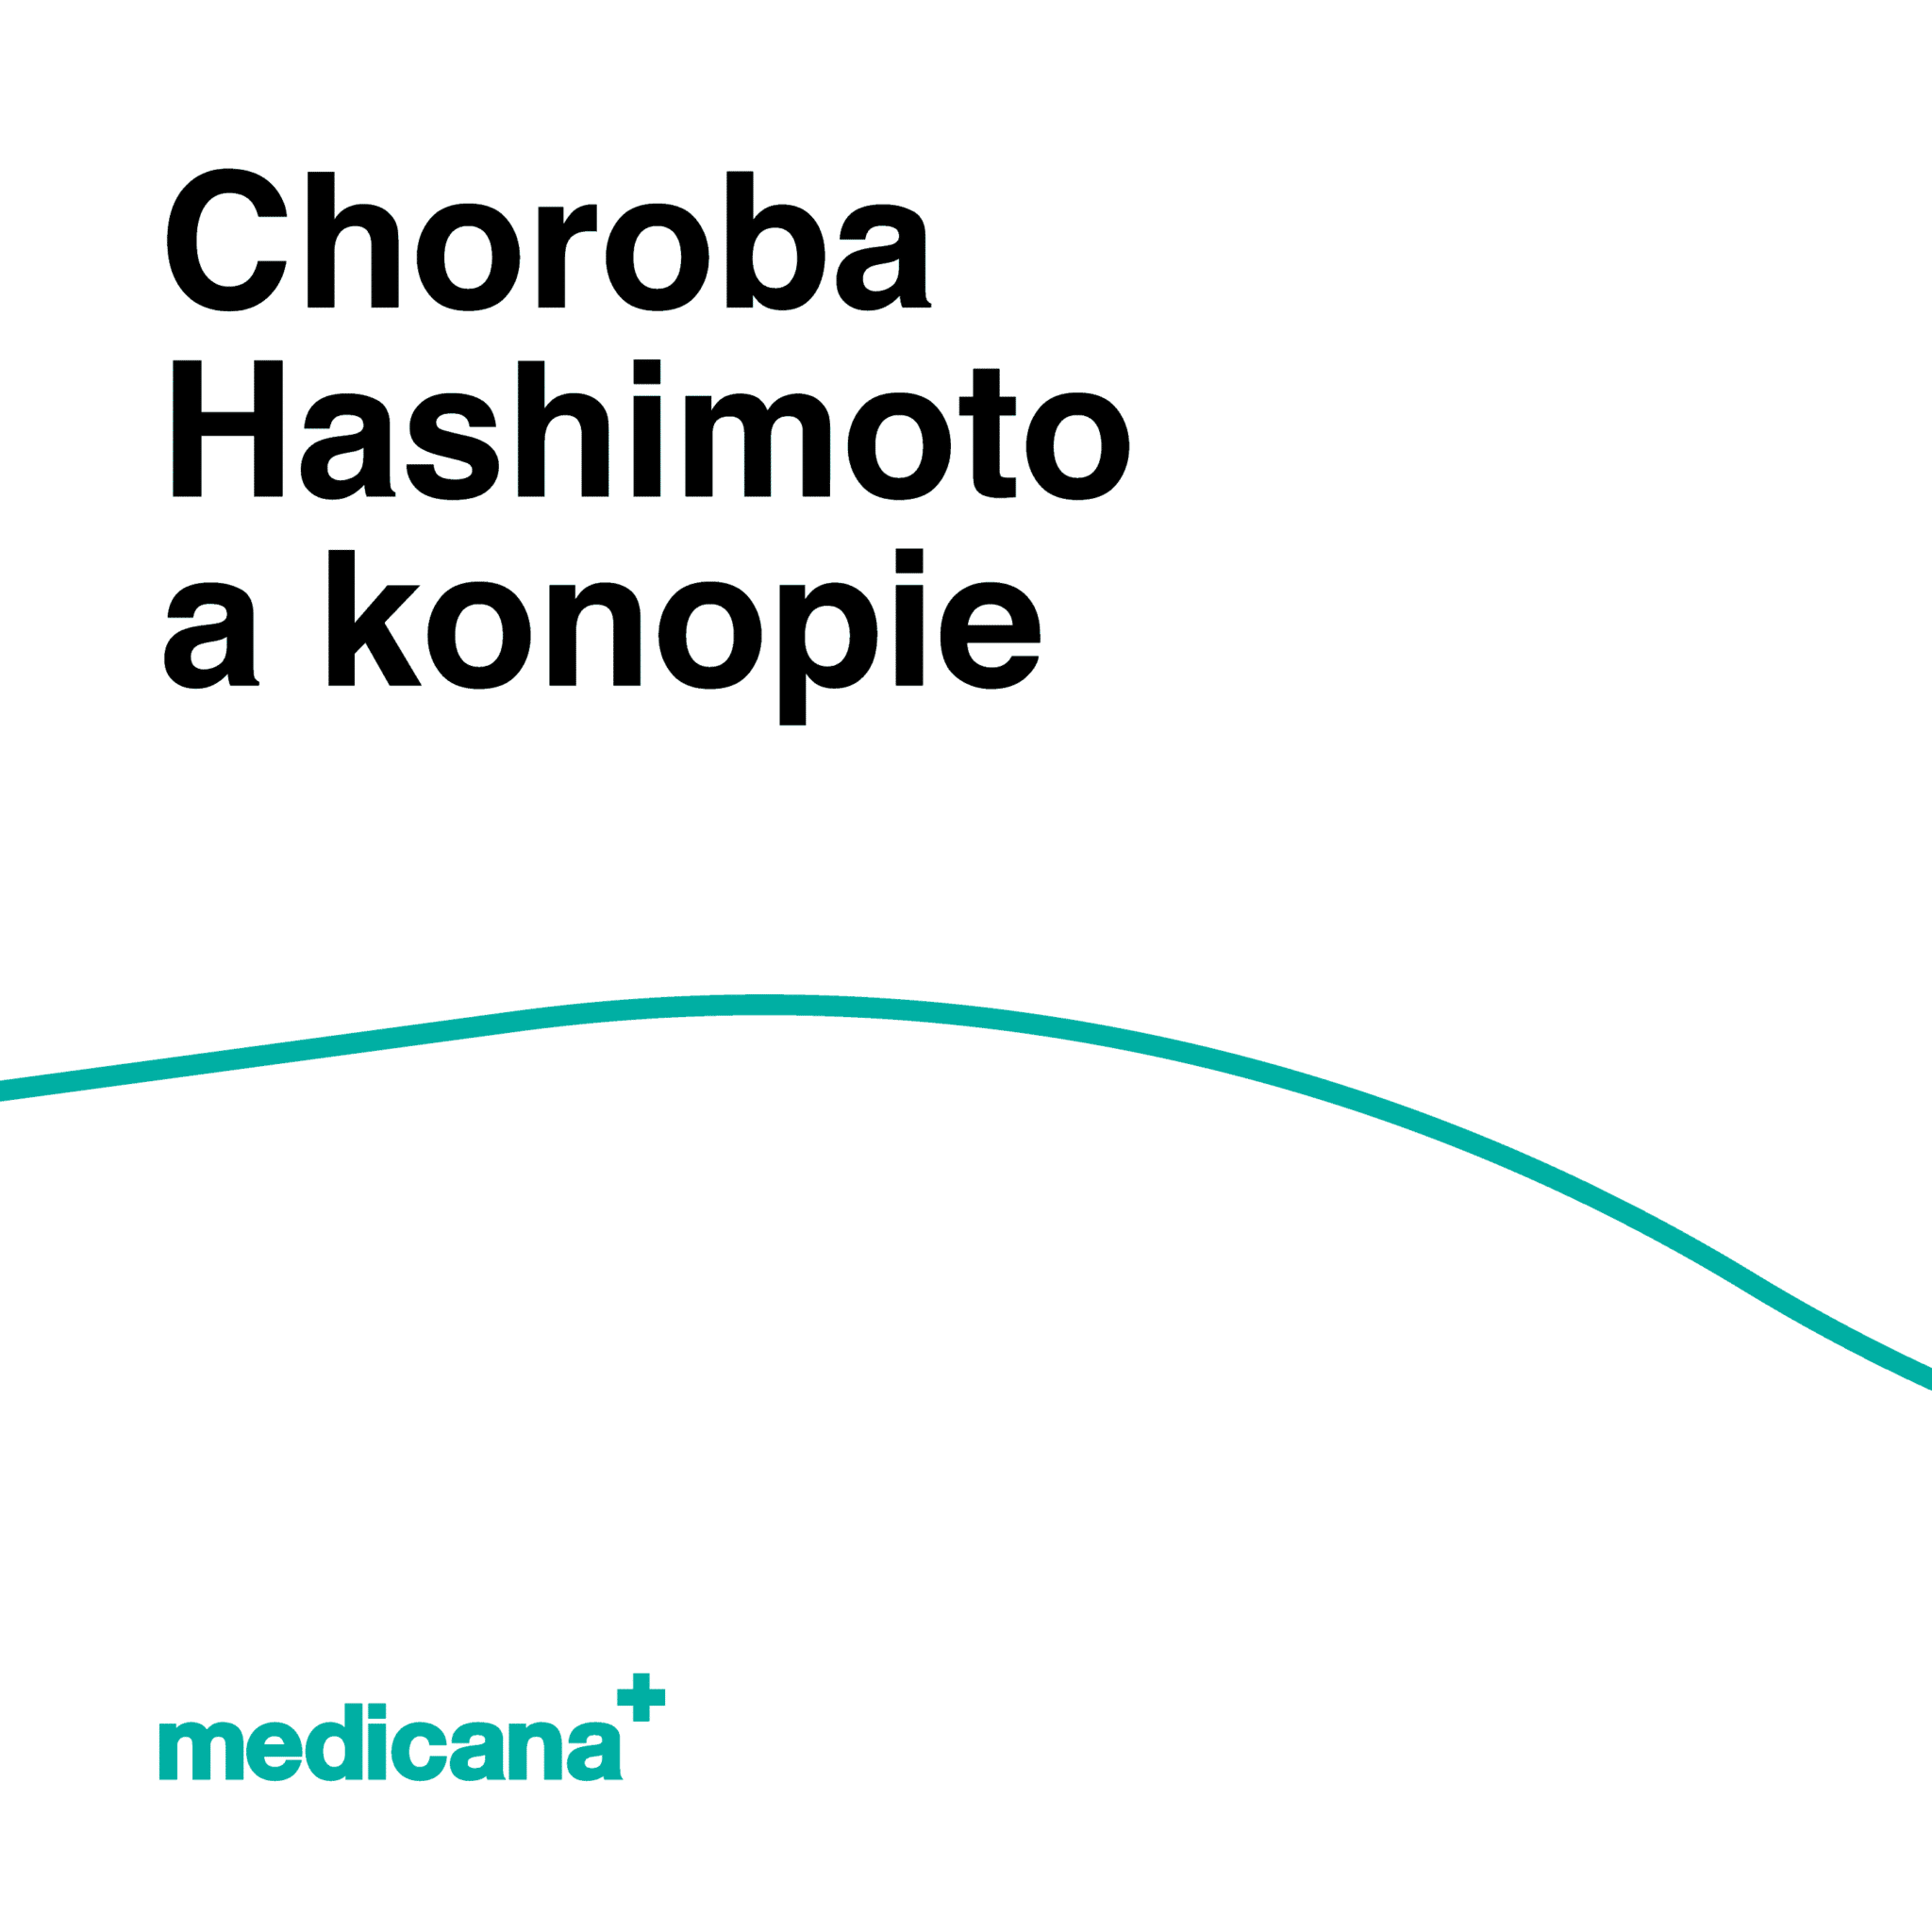 Grafika, białe tło z zieloną linią, czarnym napisem Choroba hashimoto a konopie i logo Medicana Centrum Terapii Medyczna Marihuana w lewym dolnym rogu.